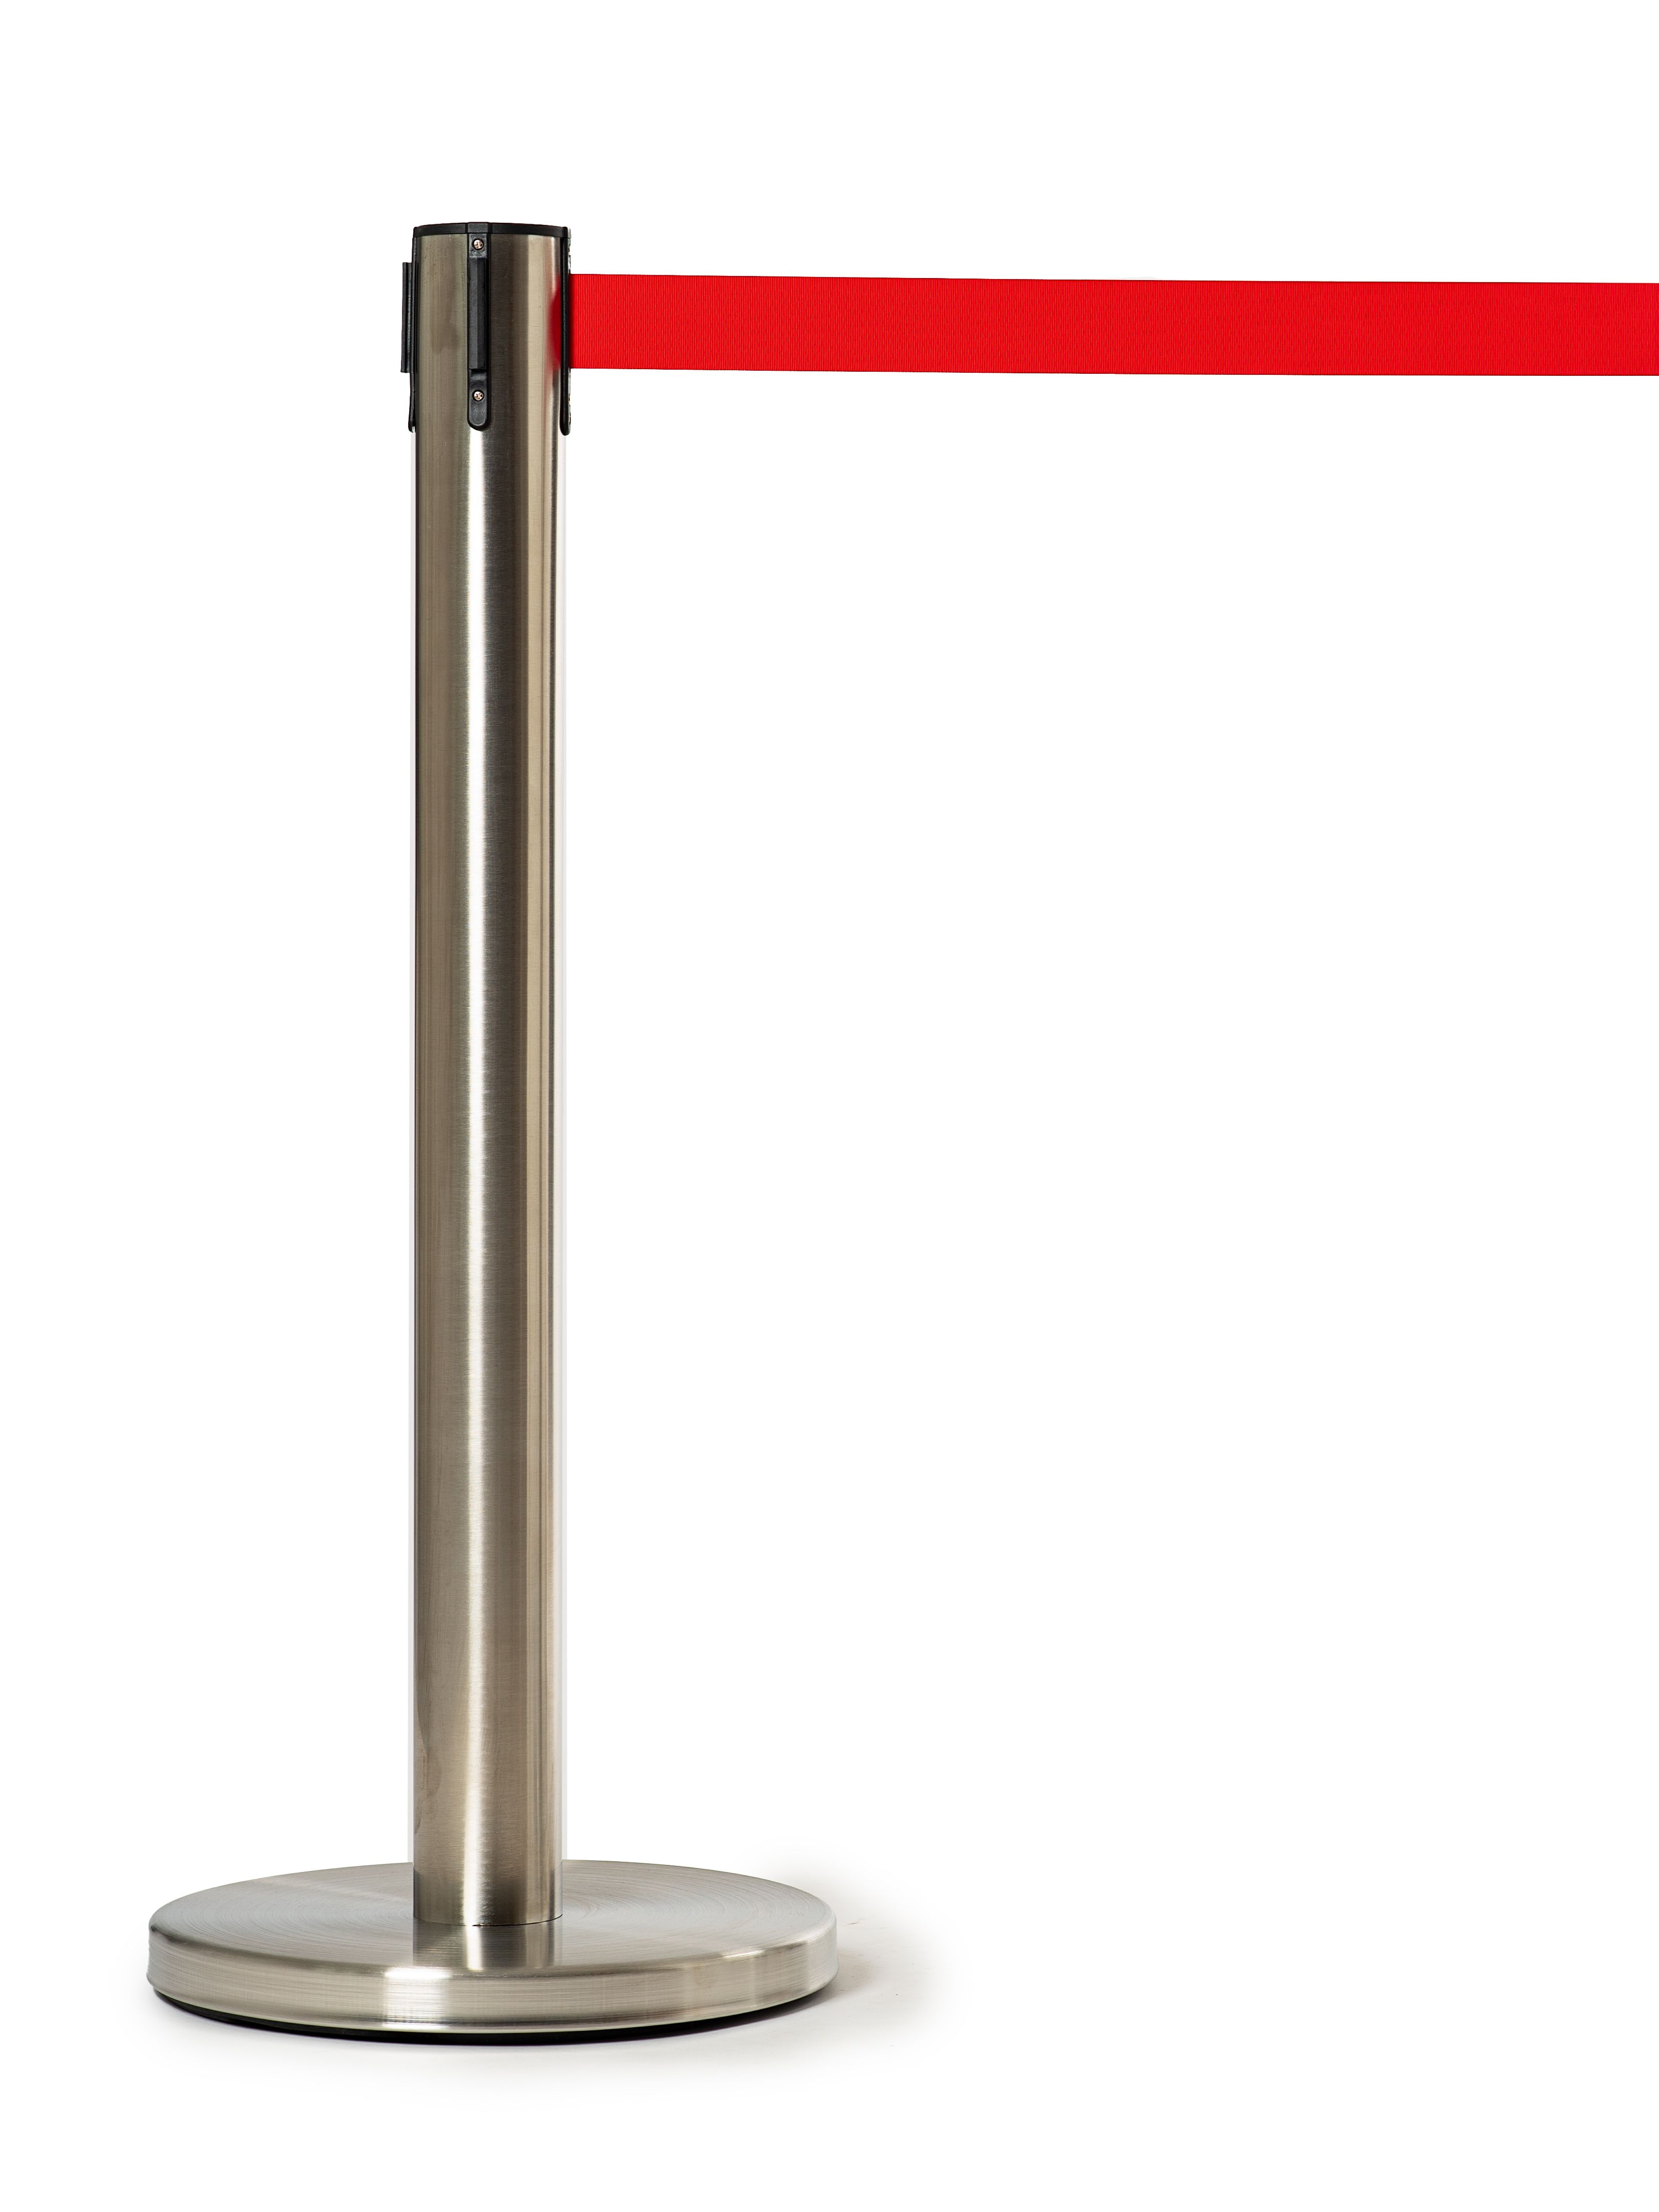 Мобильная стойка с красной лентой 5 метров (плавный ход) мобильная баскетбольная стойка dfc